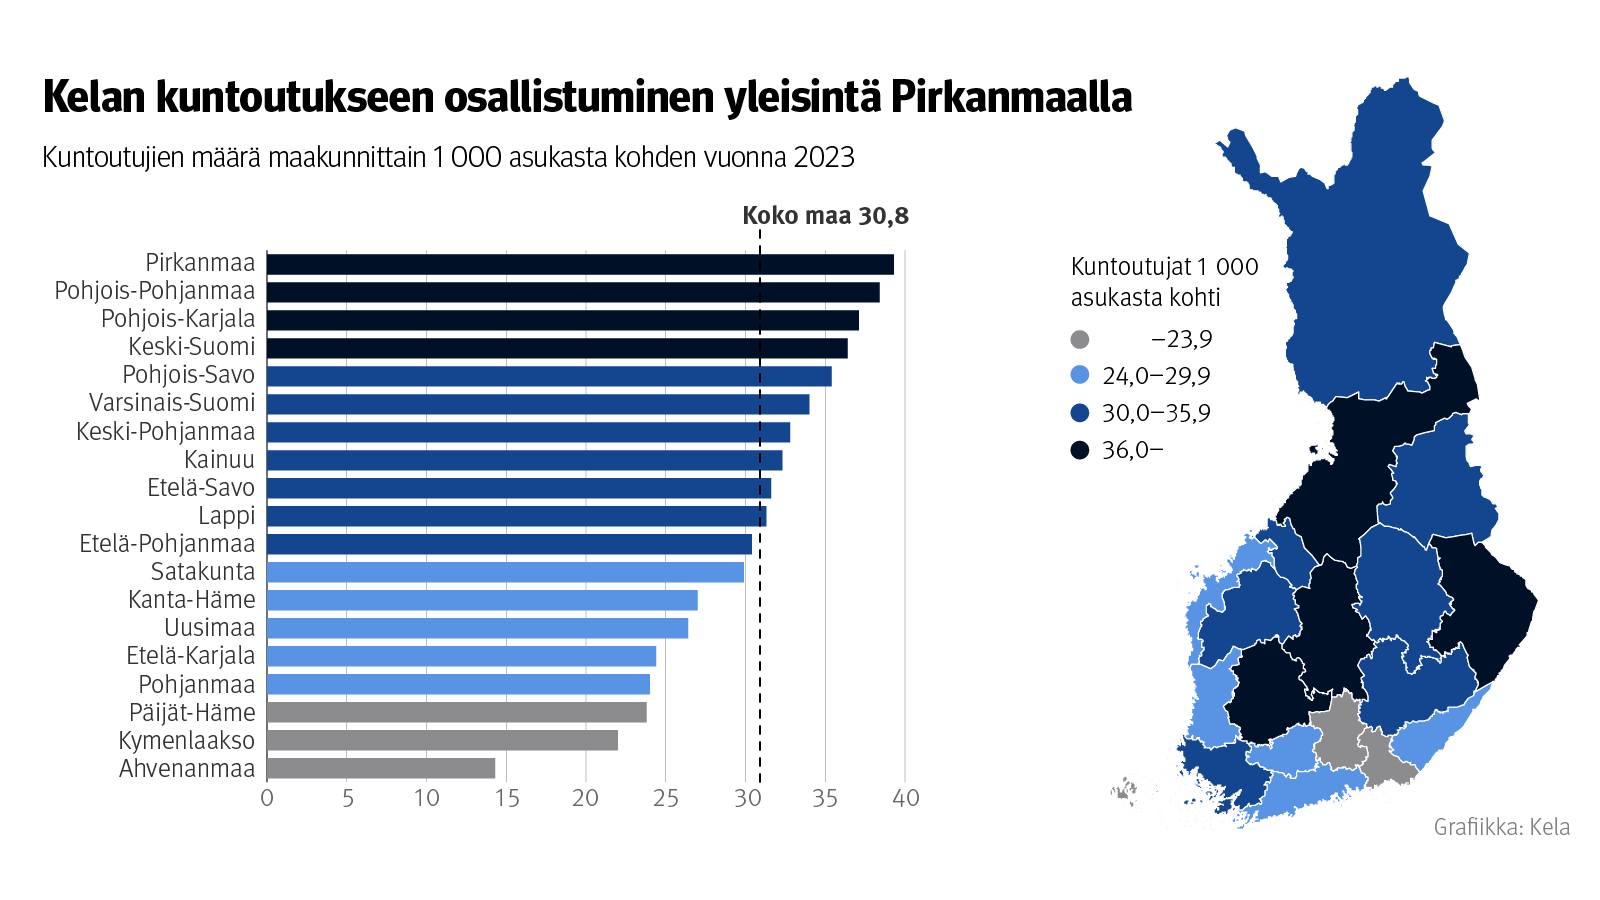 Kuvion otsikko: Kelan kuntoutukseen osallistuminen yleisinta Pirkanmaalla. Kuntoutujien määrä maakunnittain 1000 asukasta kohden vuonna 2023. Eniten kuntoutujia oli Pirkanmaalla, vähiten Ahvenanmaalla.